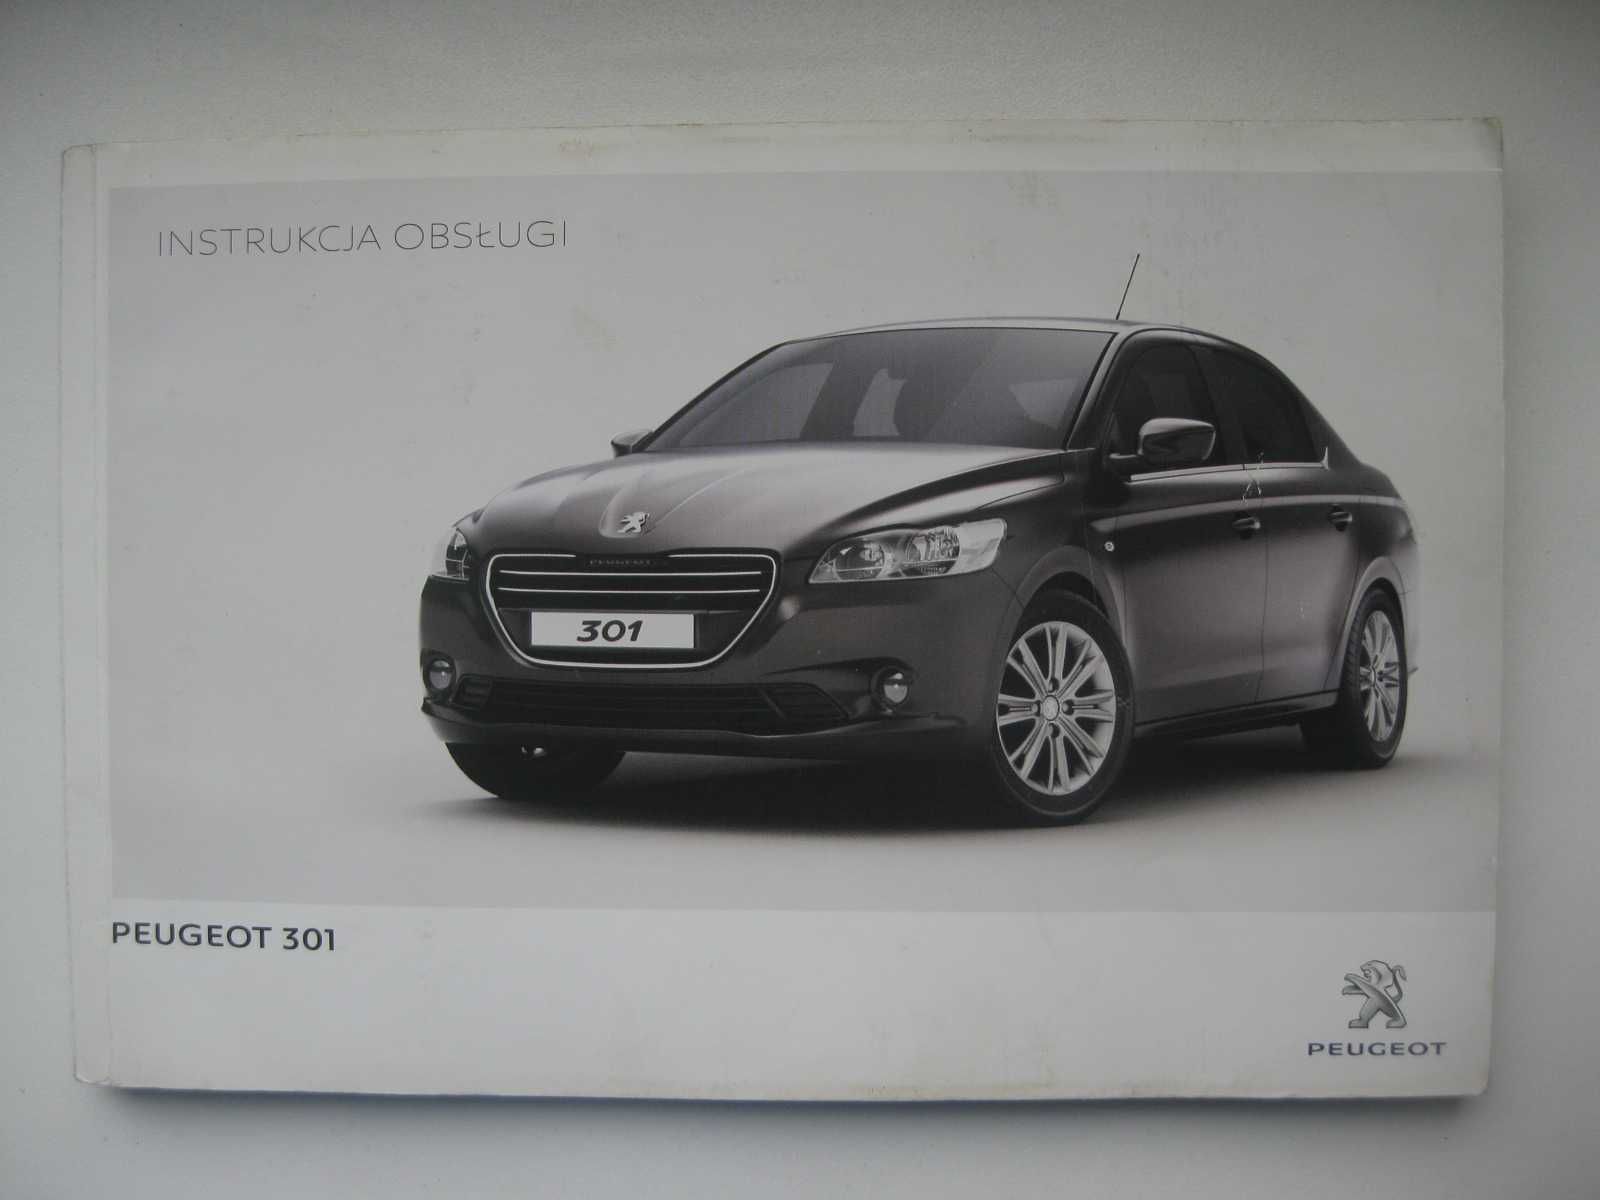 Peugeot 301 Polska instrukcja obsługi kolorowa książka obsługi 2012/13